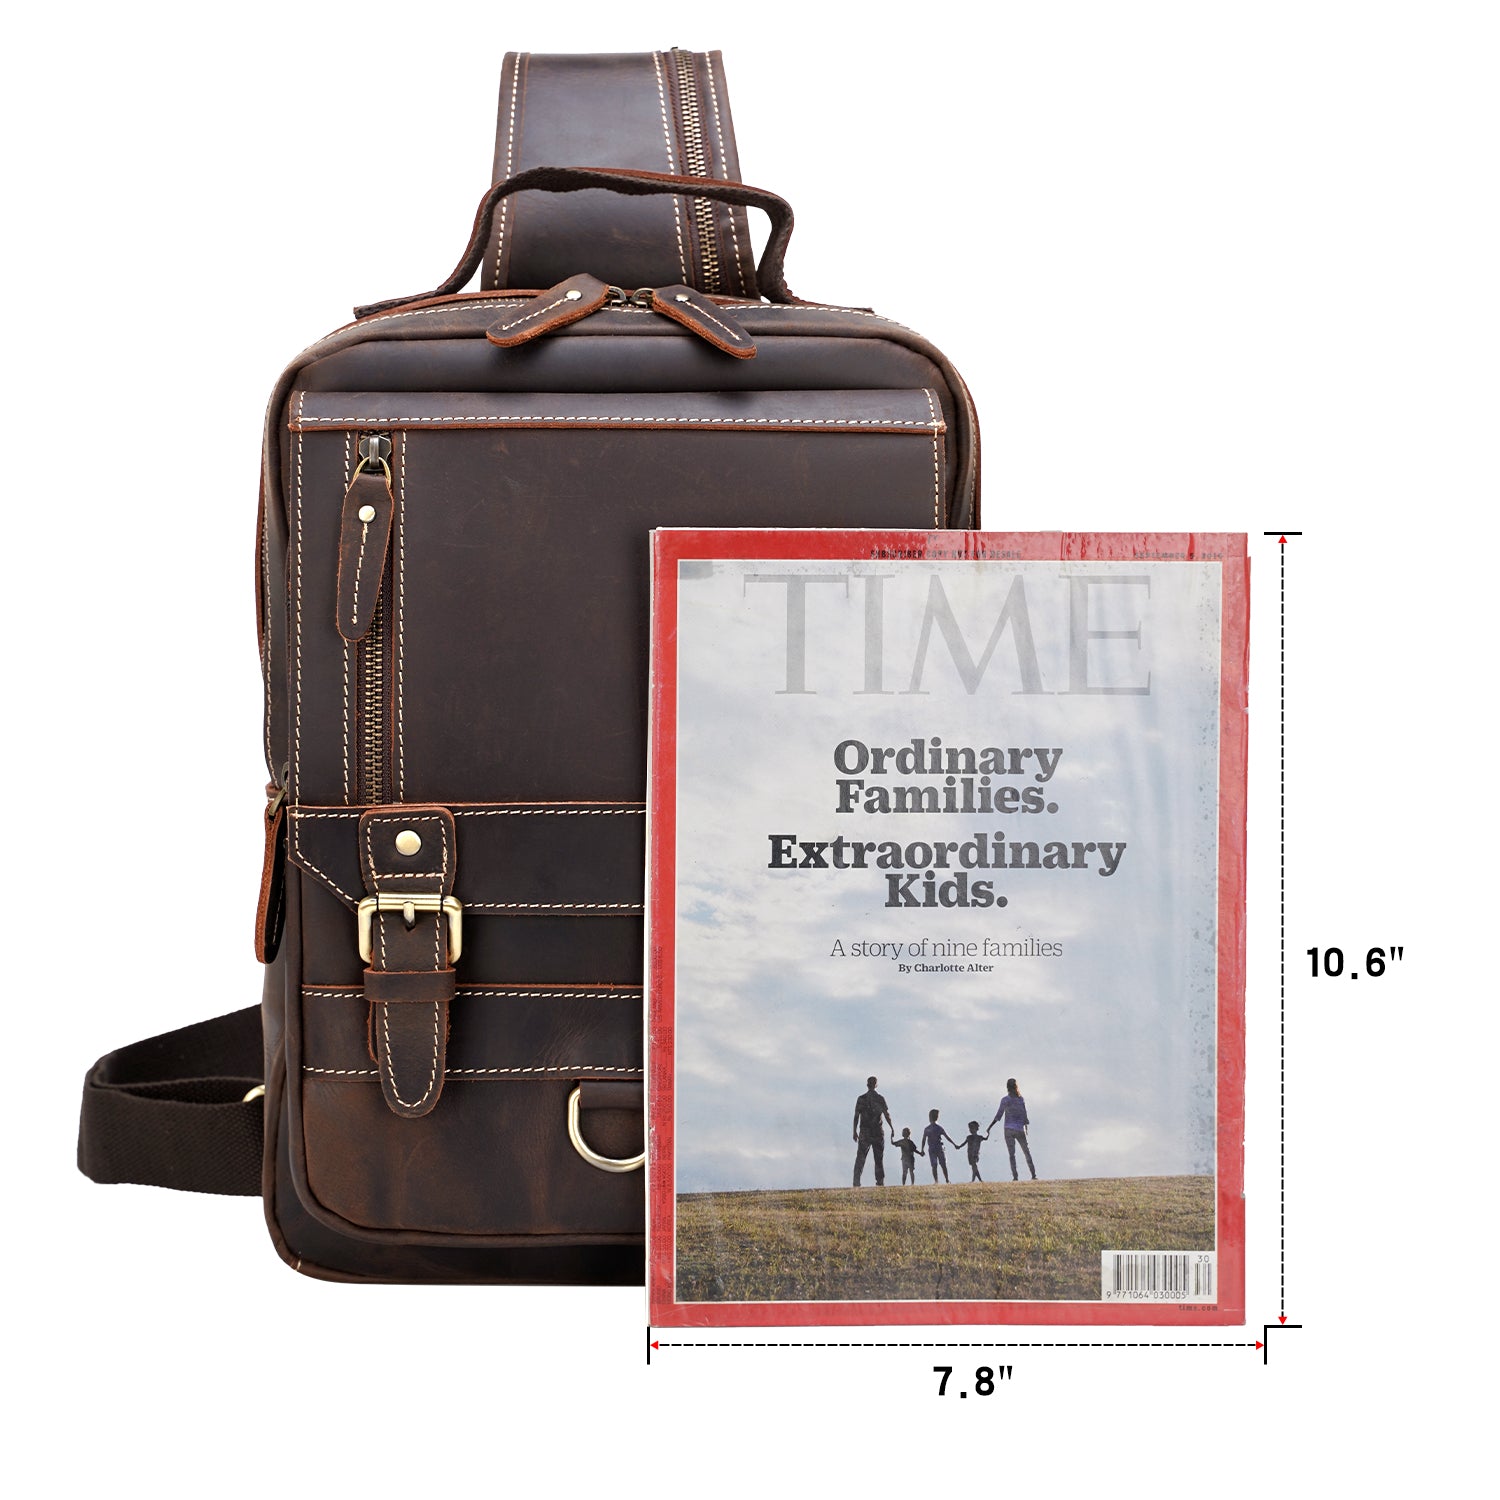 Polare Full Grain Leather Sling Bag Travel/Hiking Bike Multi-Purpose  Crossbody Daypack For Men